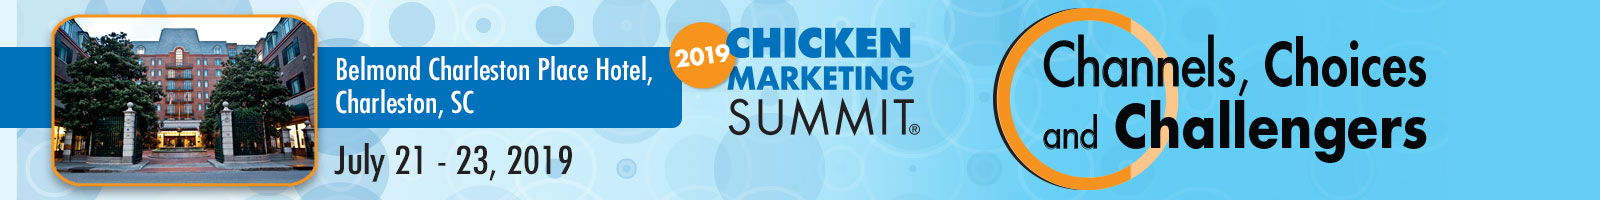 Chicken Marketing Summit 2019